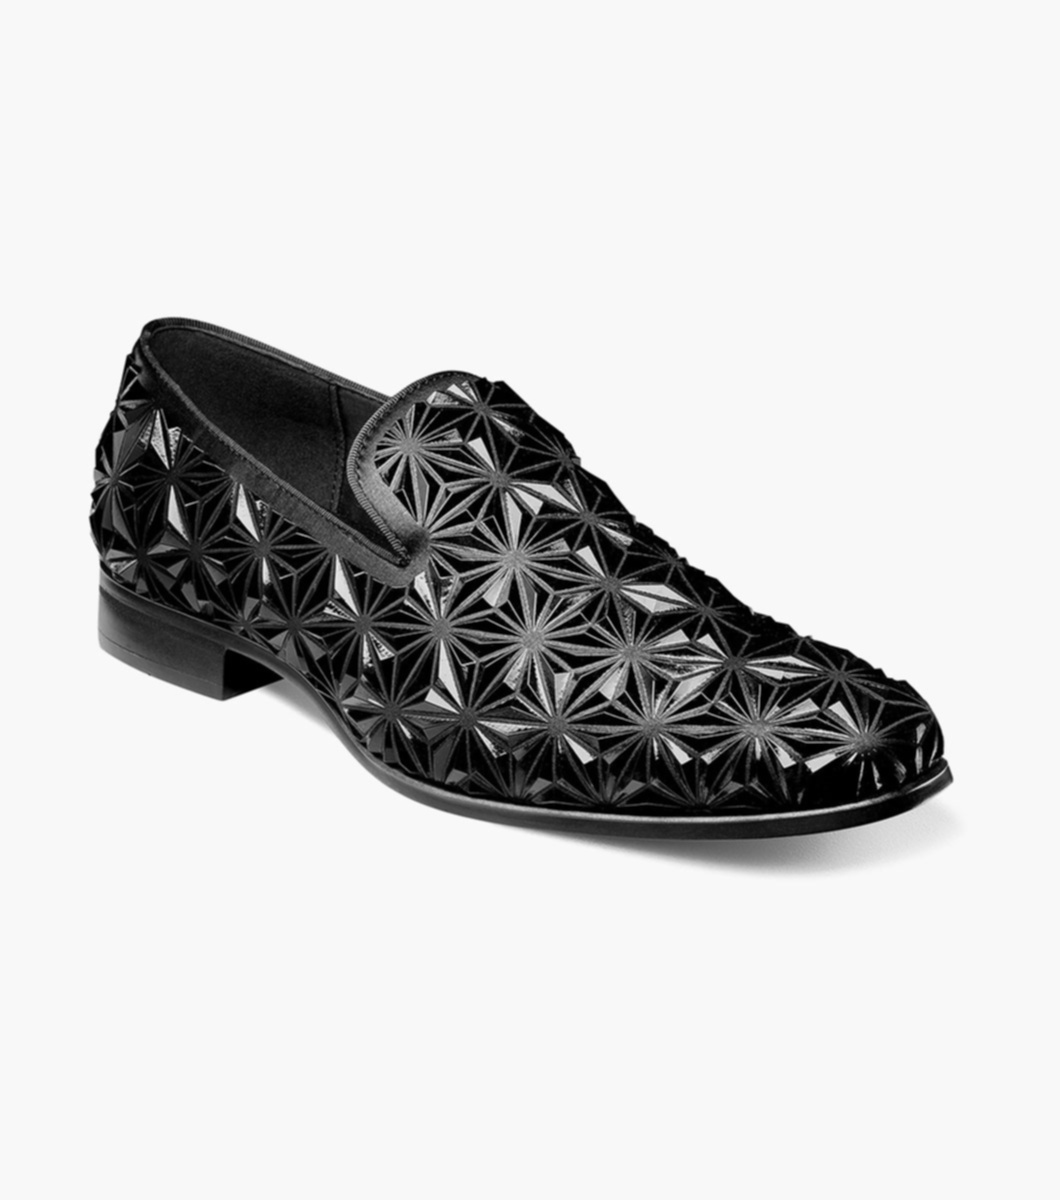 Men's Stacy Adams Shoes- Size 11W - Depop